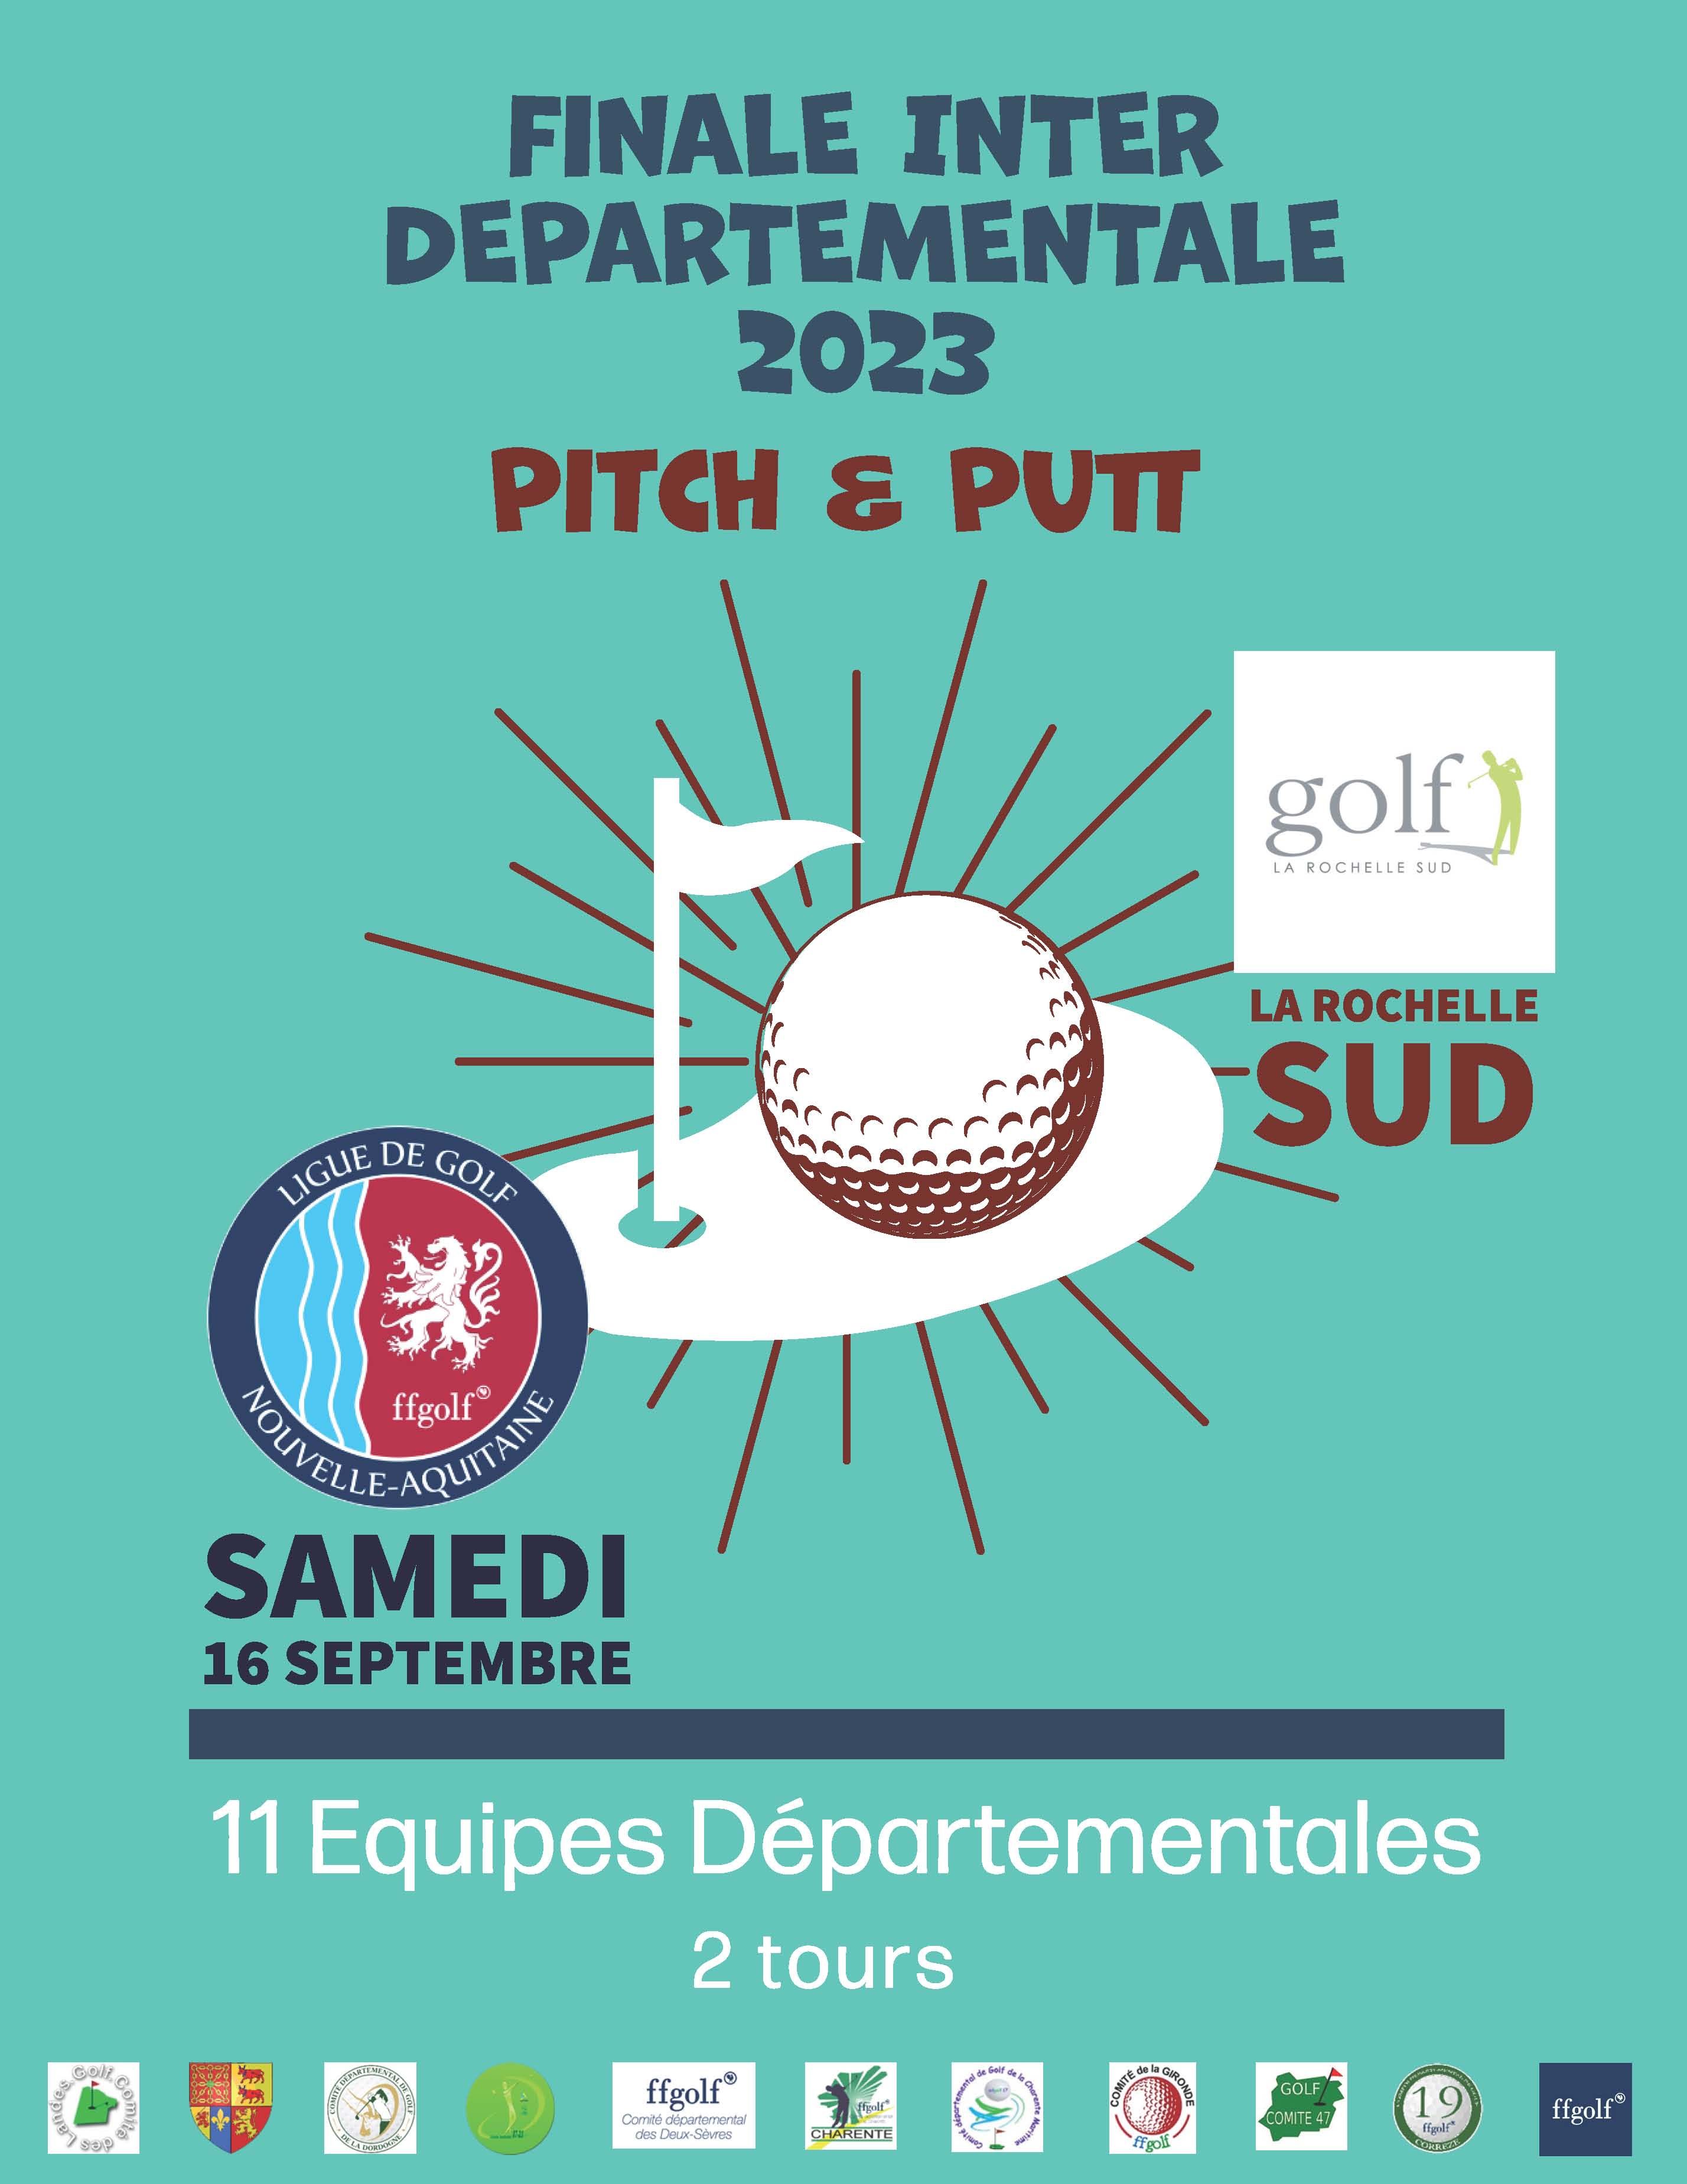 FRPPAffiche2023-faa0fa90 Commission Pitch and Putt du Comité de Golf de la Dordogne